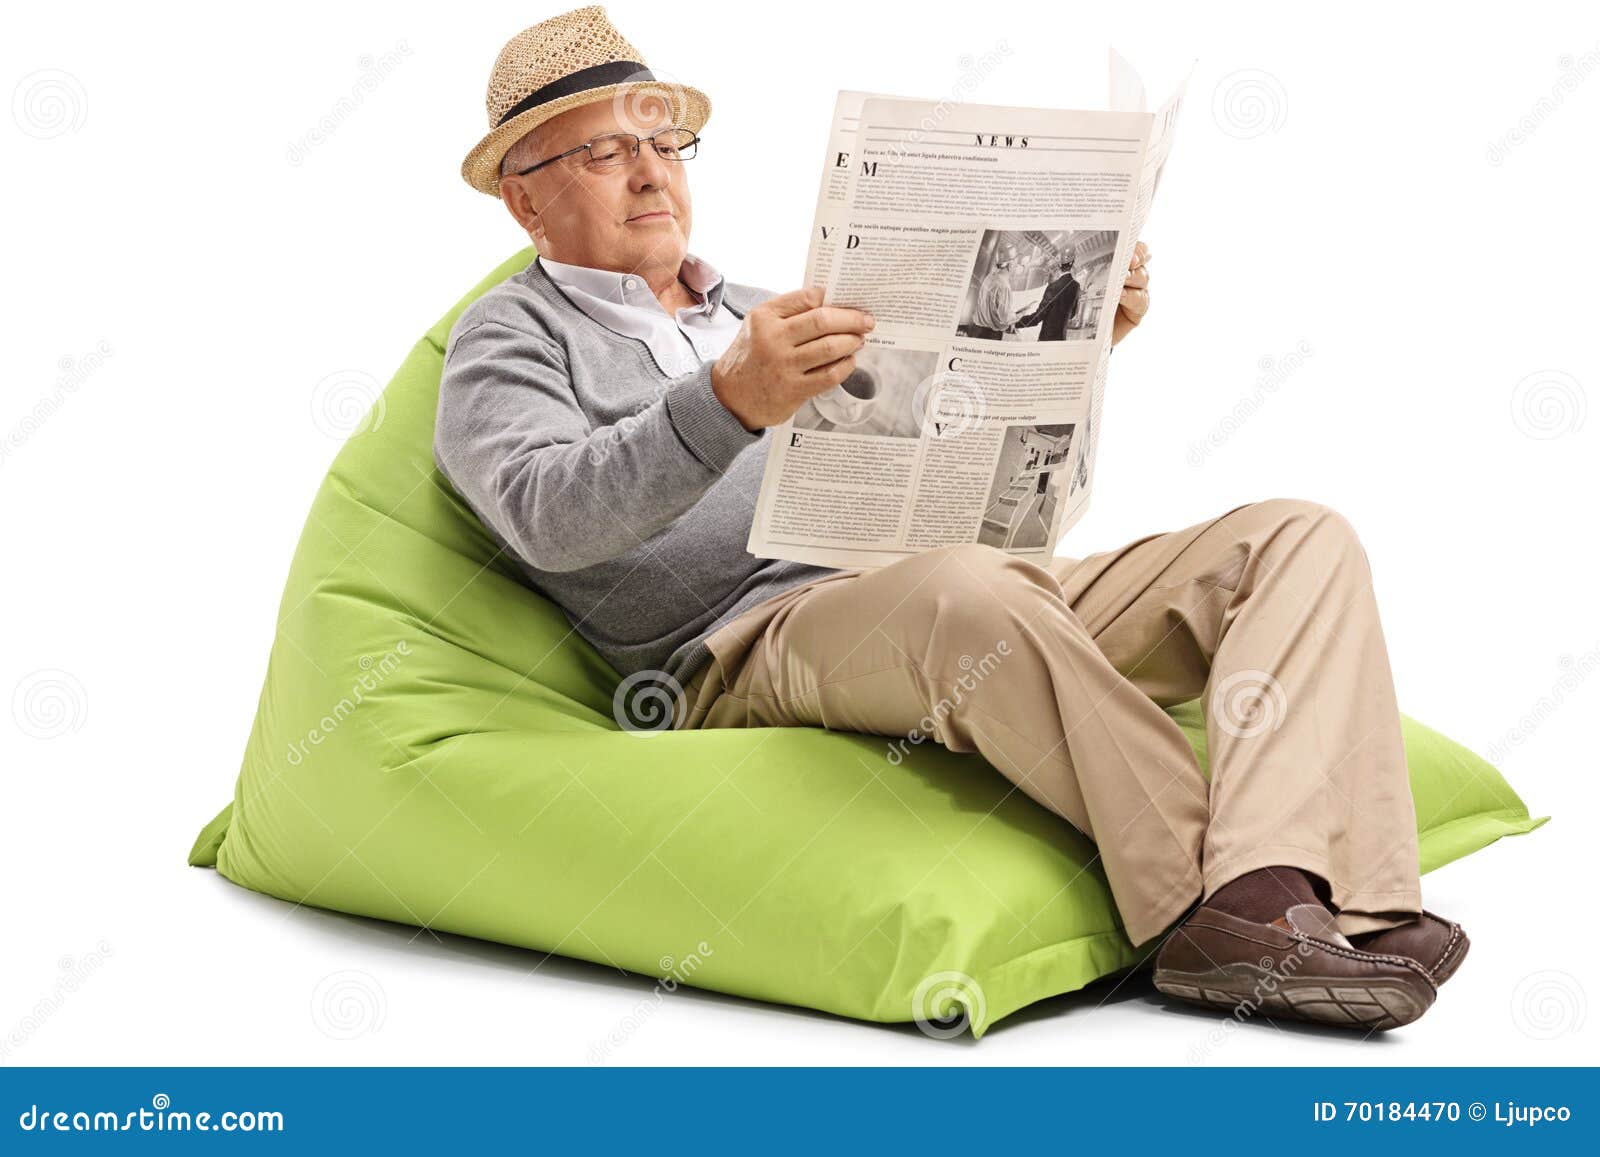 Читать газету толстушку